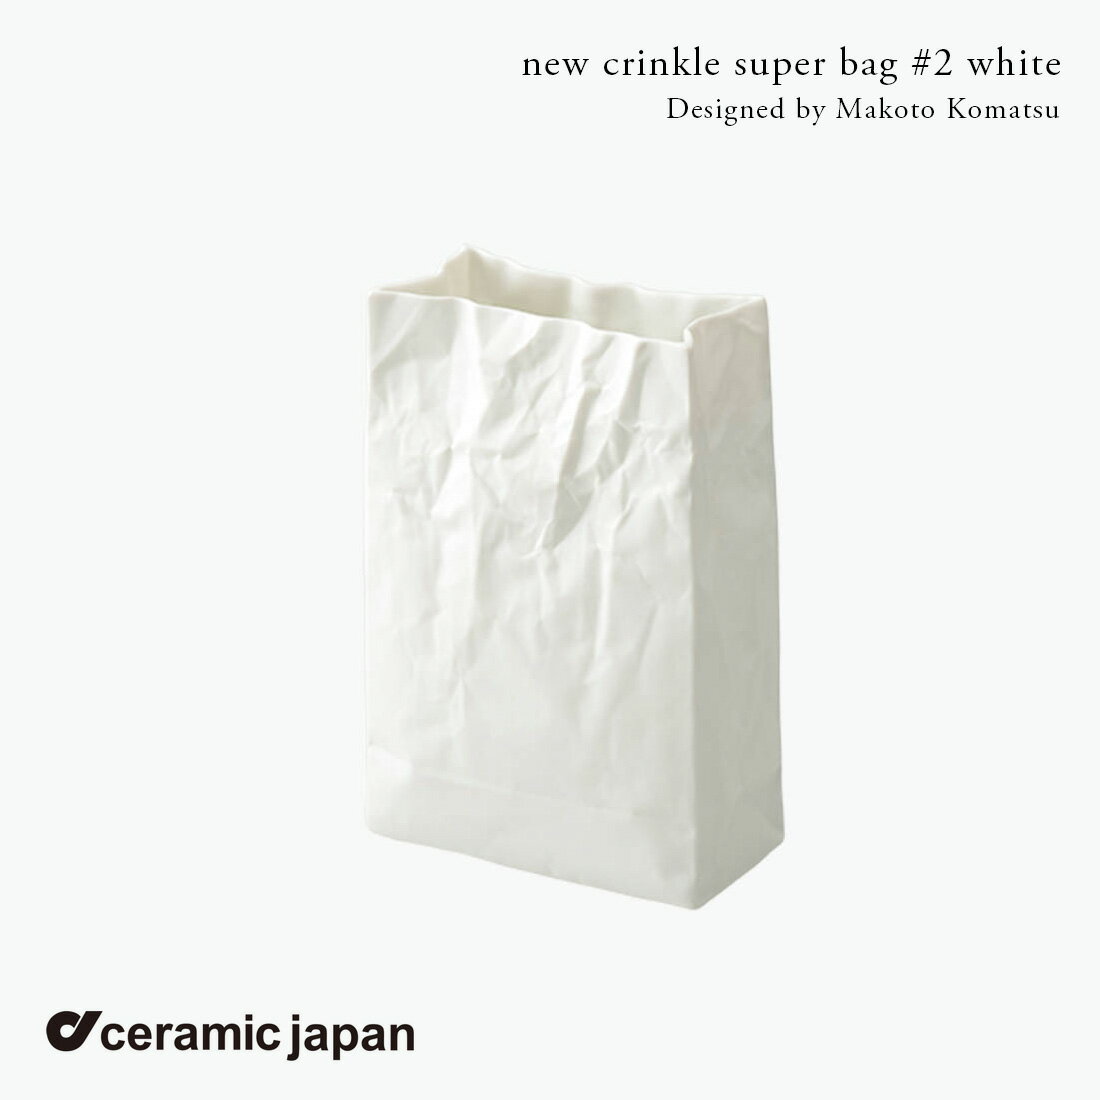 セラミック・ジャパン クリンクル new crinkle super bag #2 小松誠 ホワイト ニュークリンクル 花瓶 フラワーベース MoMA永久収蔵品